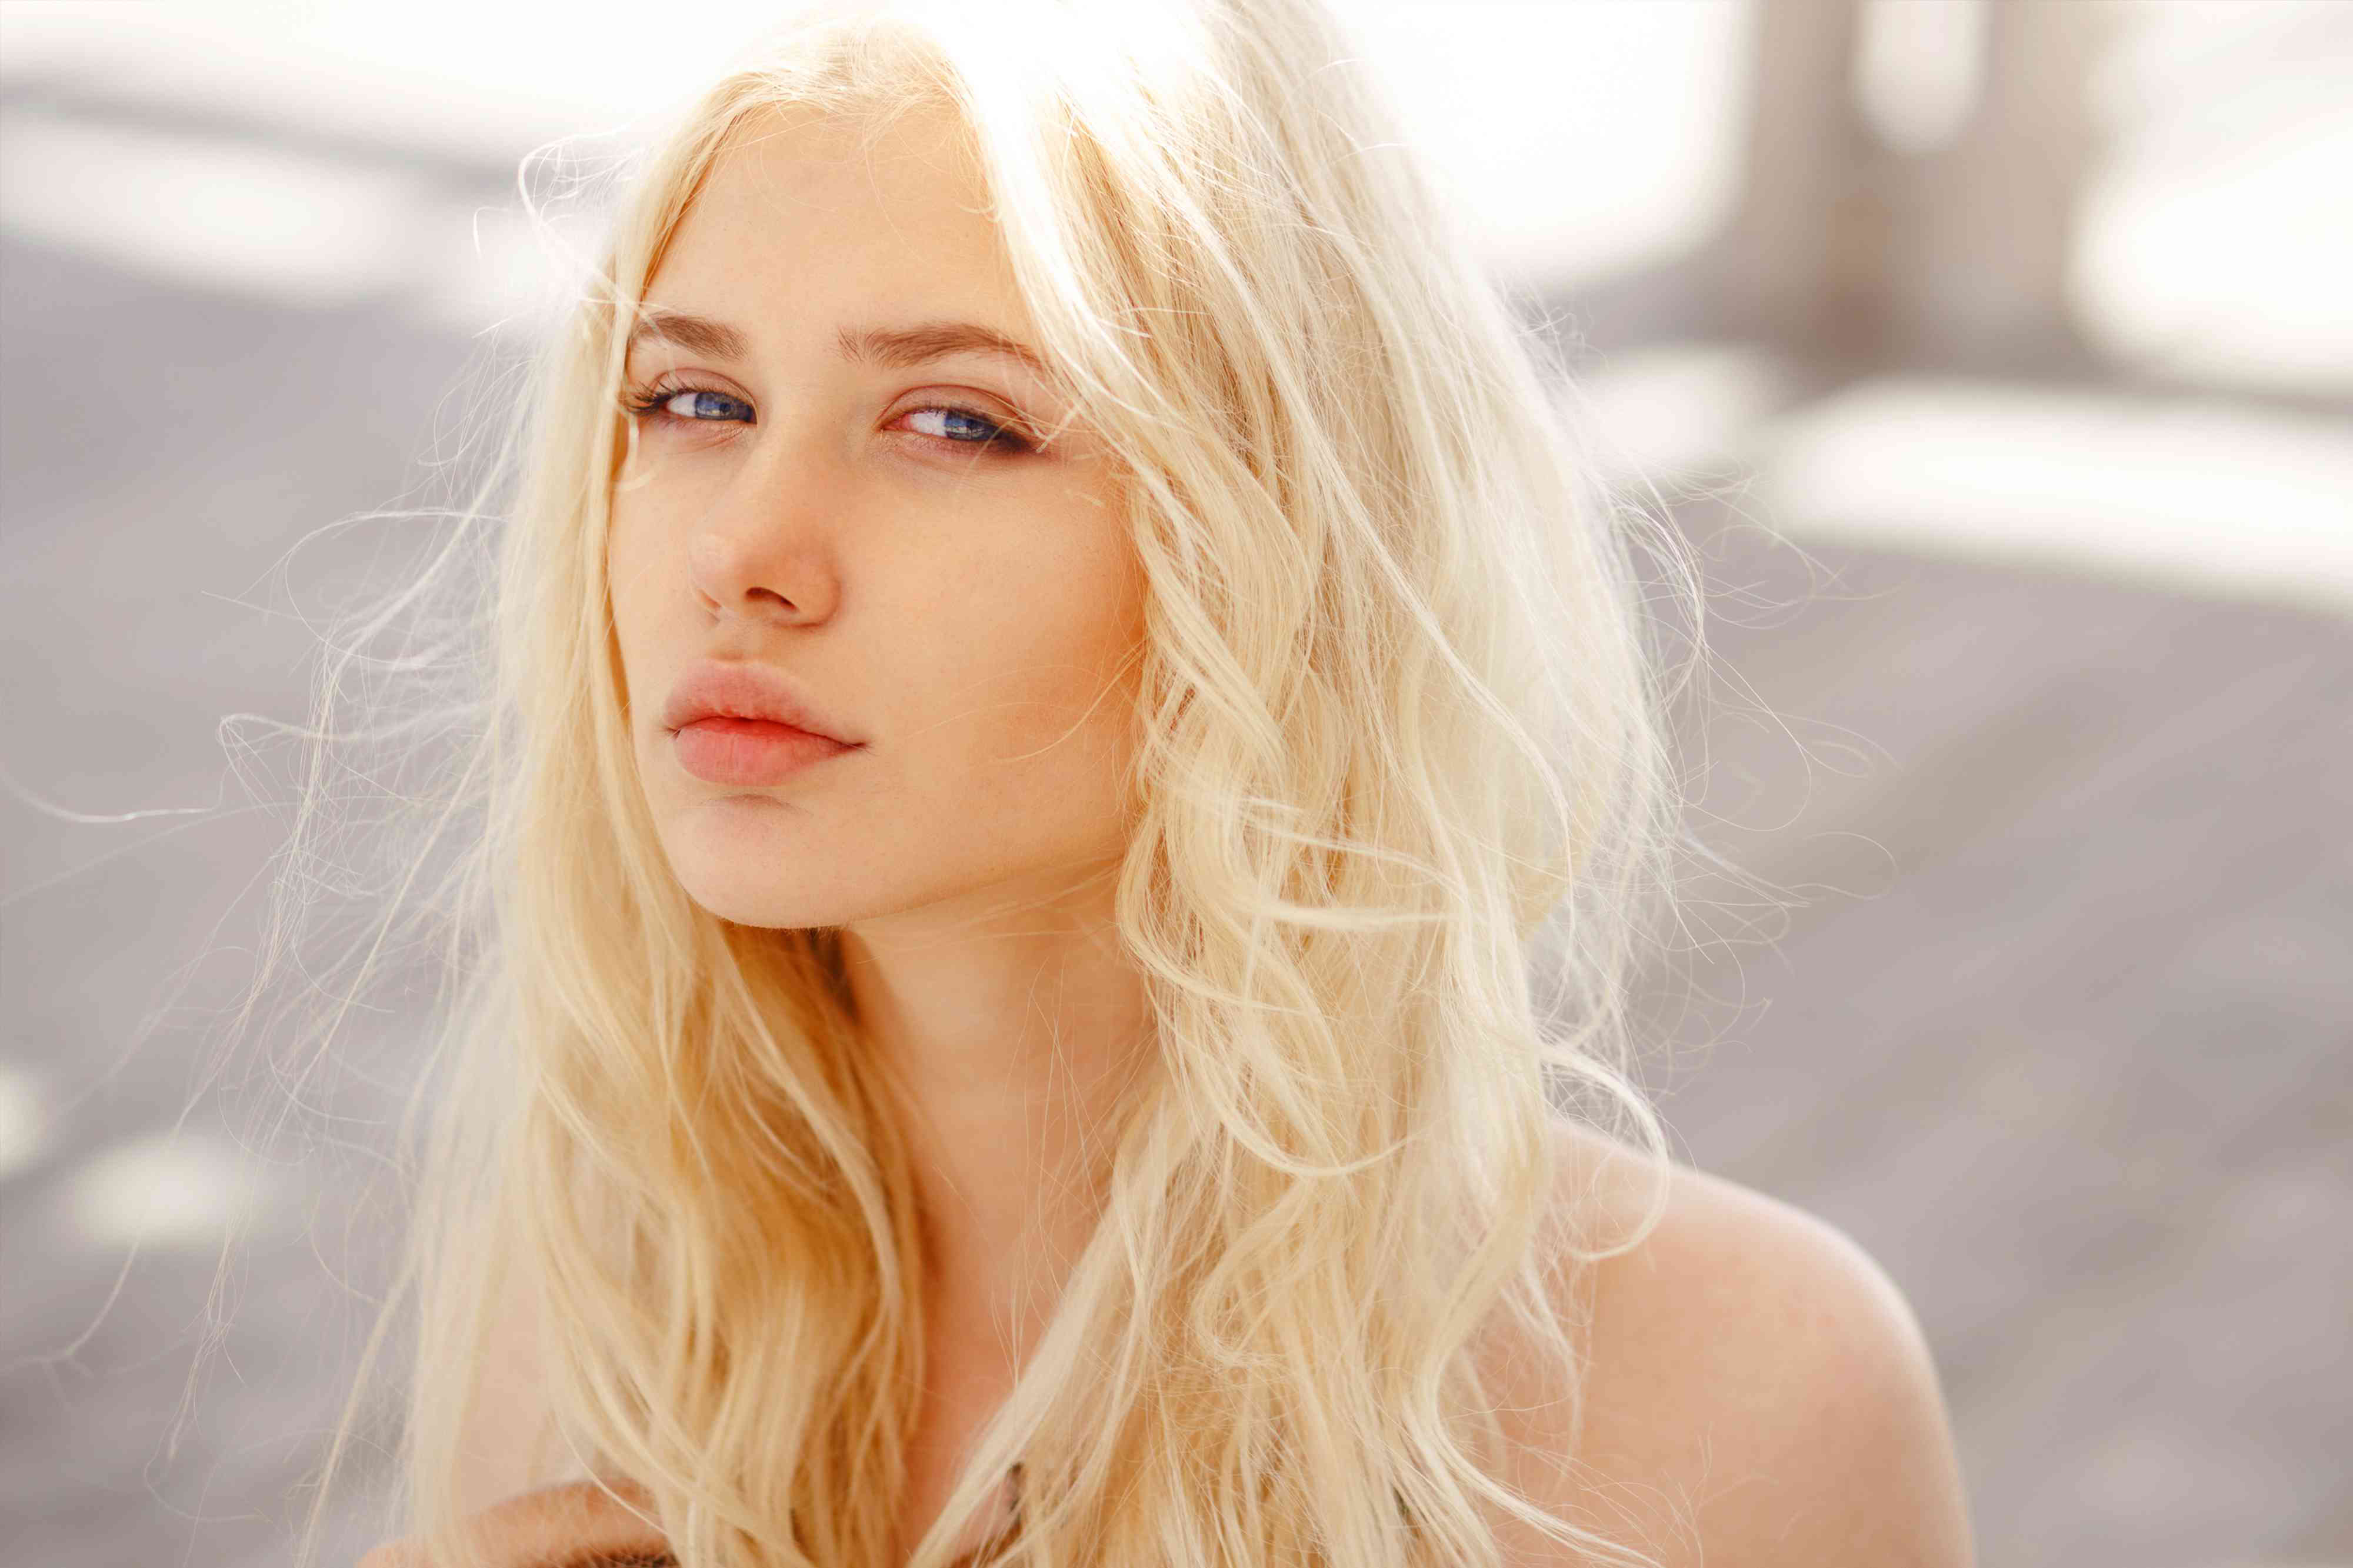 1. "Nordic Blonde" hair dye - wide 2